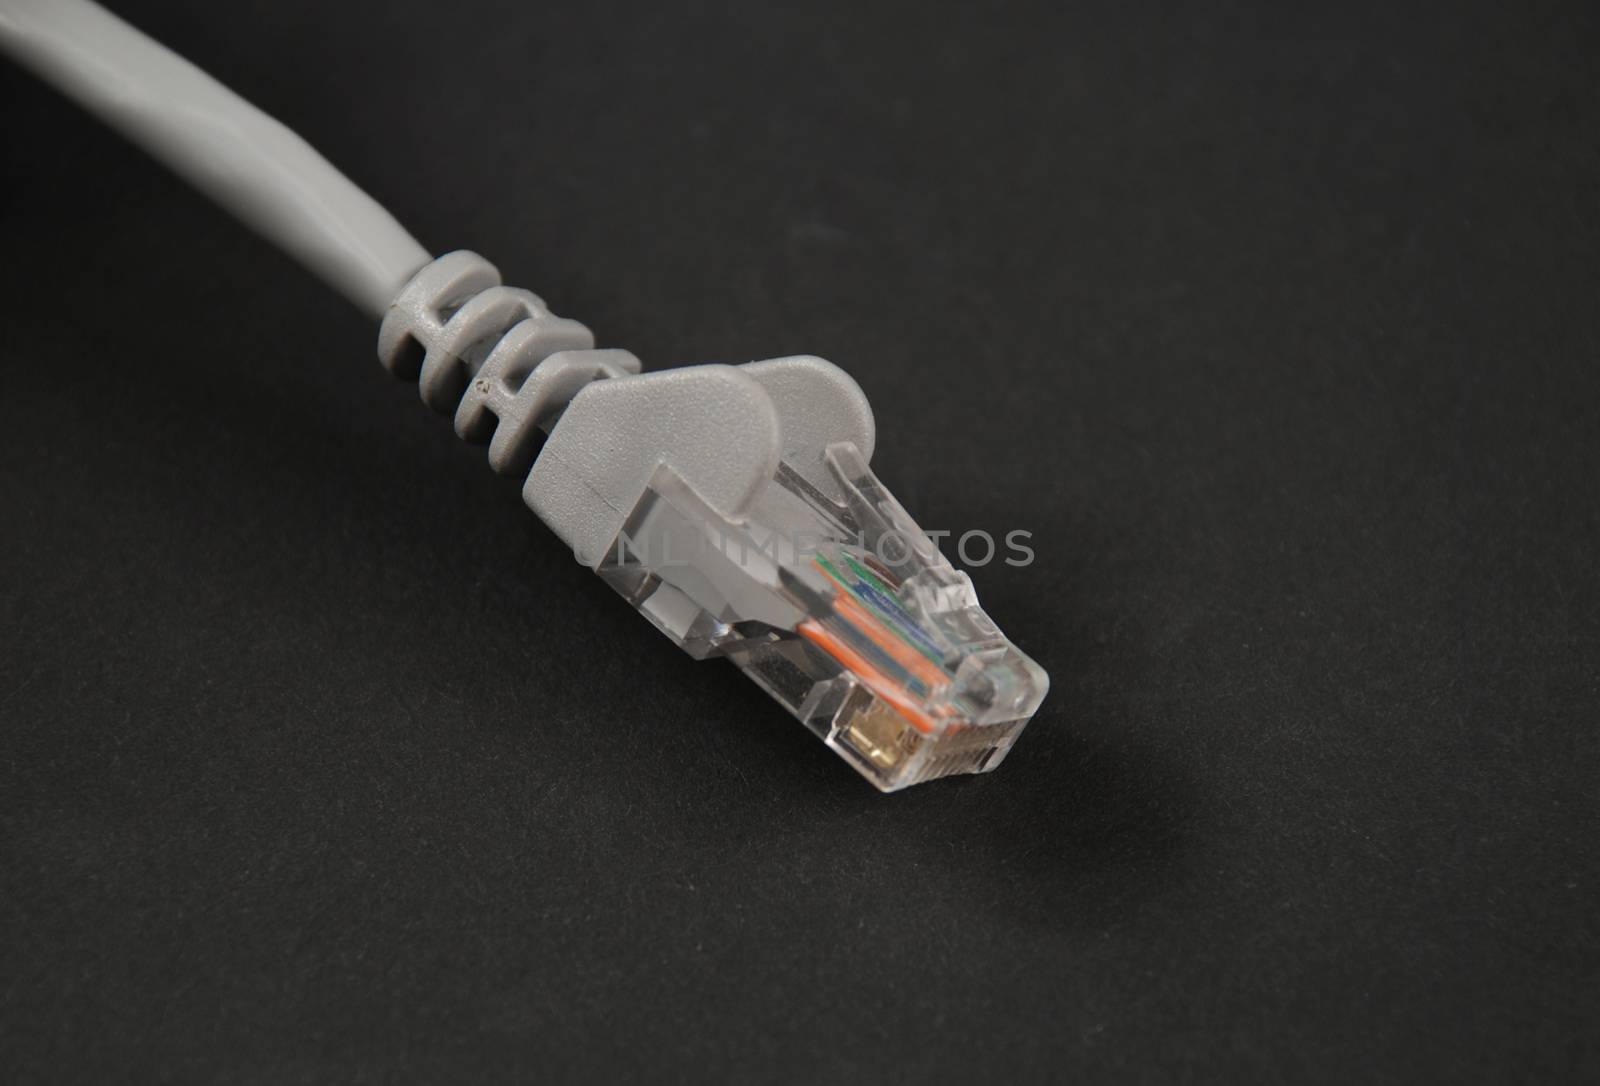 ethernet connectors by albln